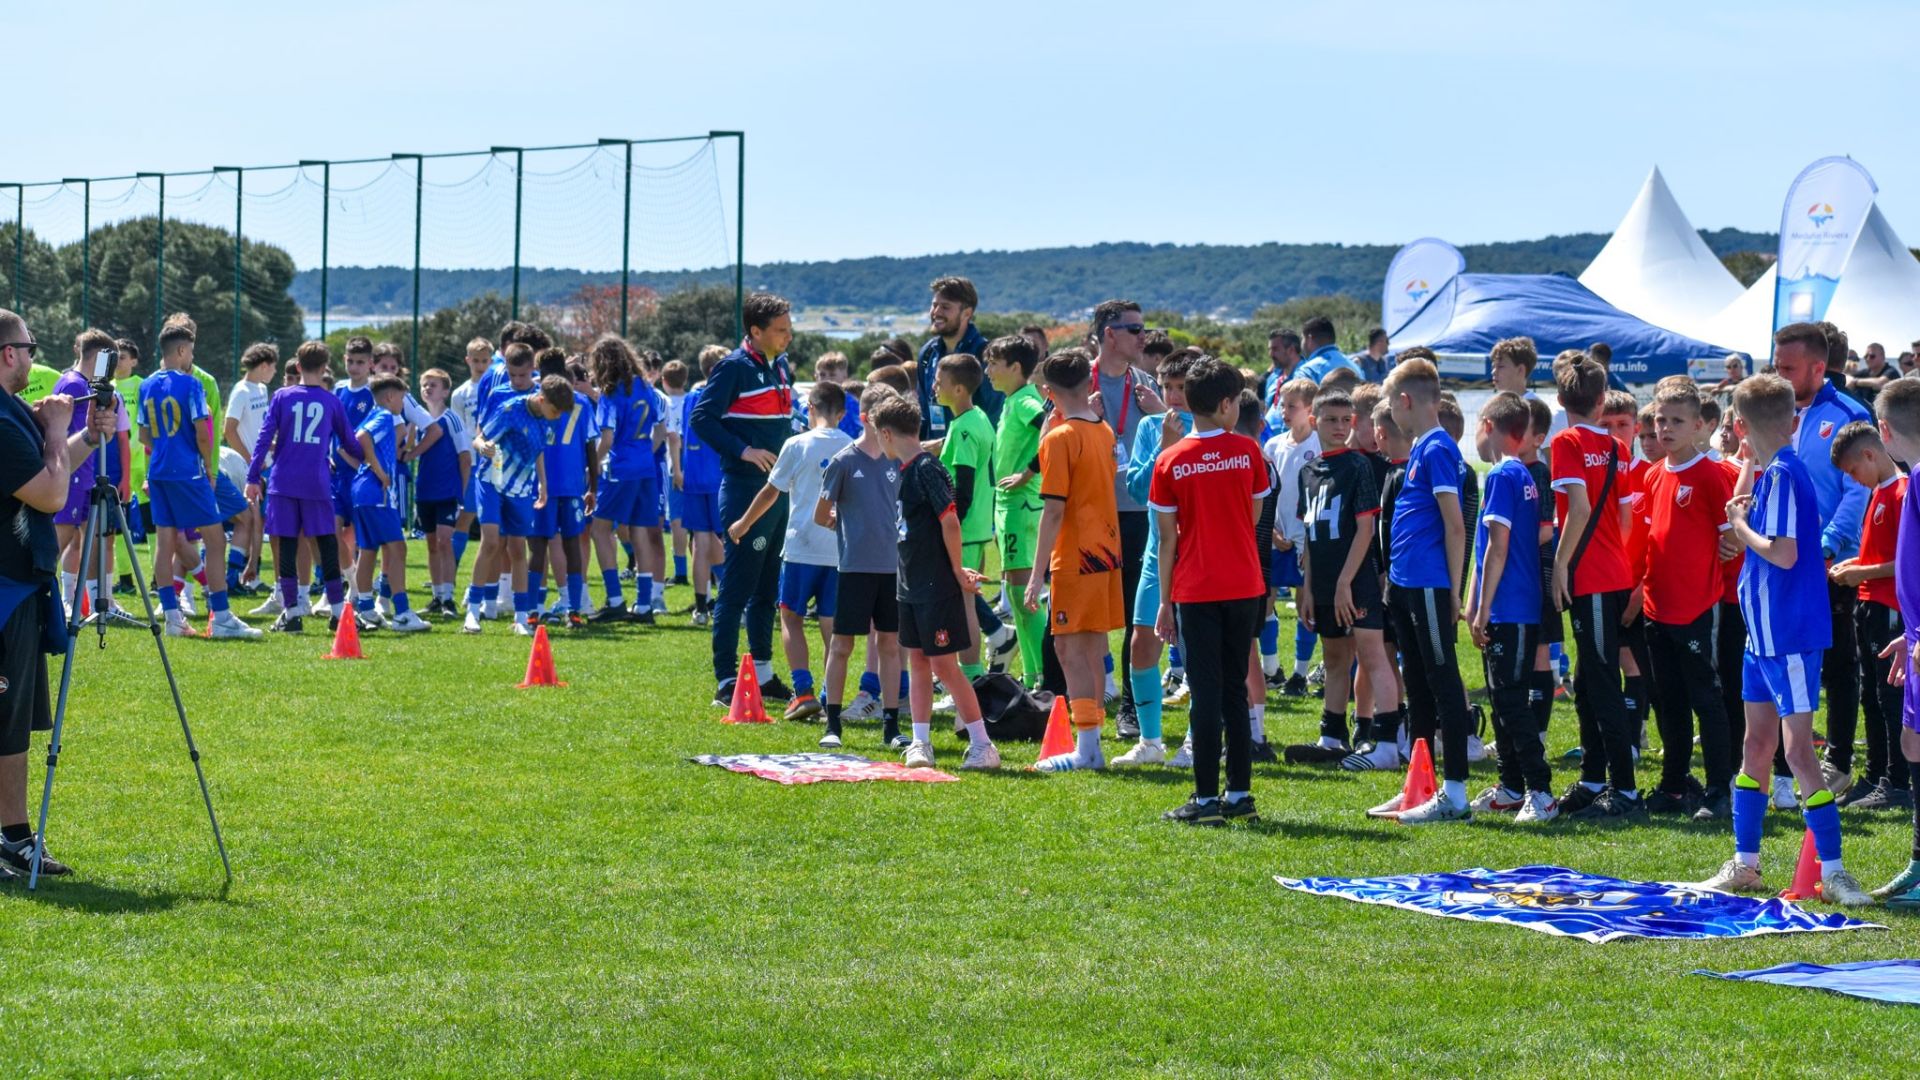 Završen je 23. Međunarodni nogometni turnir u Medulinu, jedan od najvećih sportskih događaja u Hrvatskoj